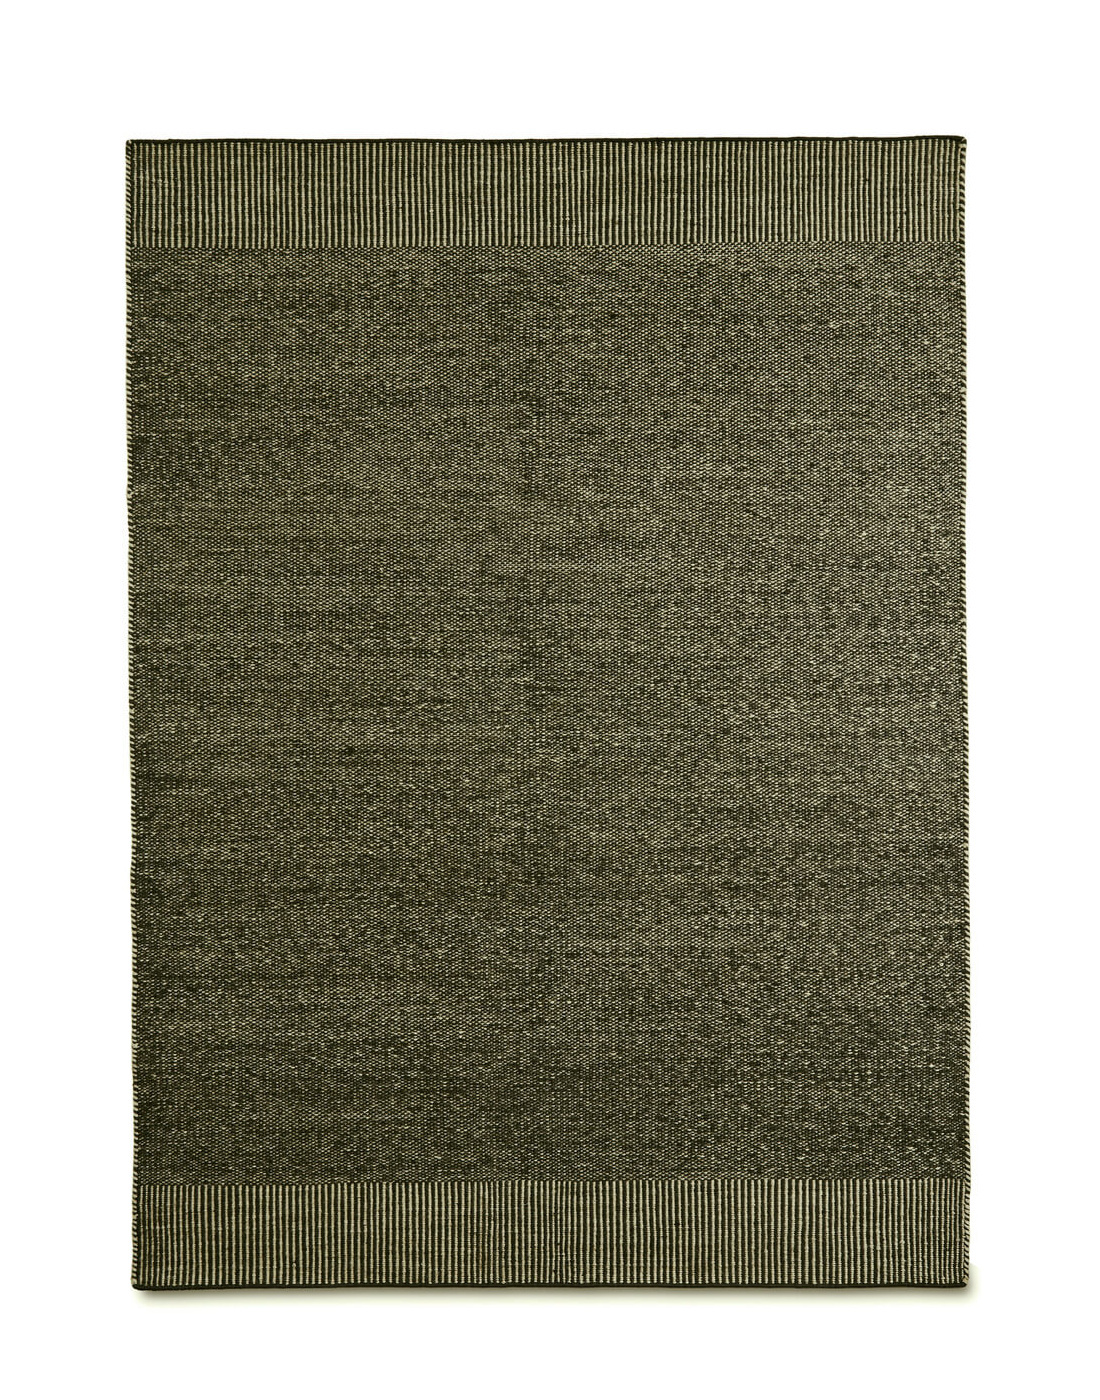 Rombo Teppich, 170 x 240 cm, moss green